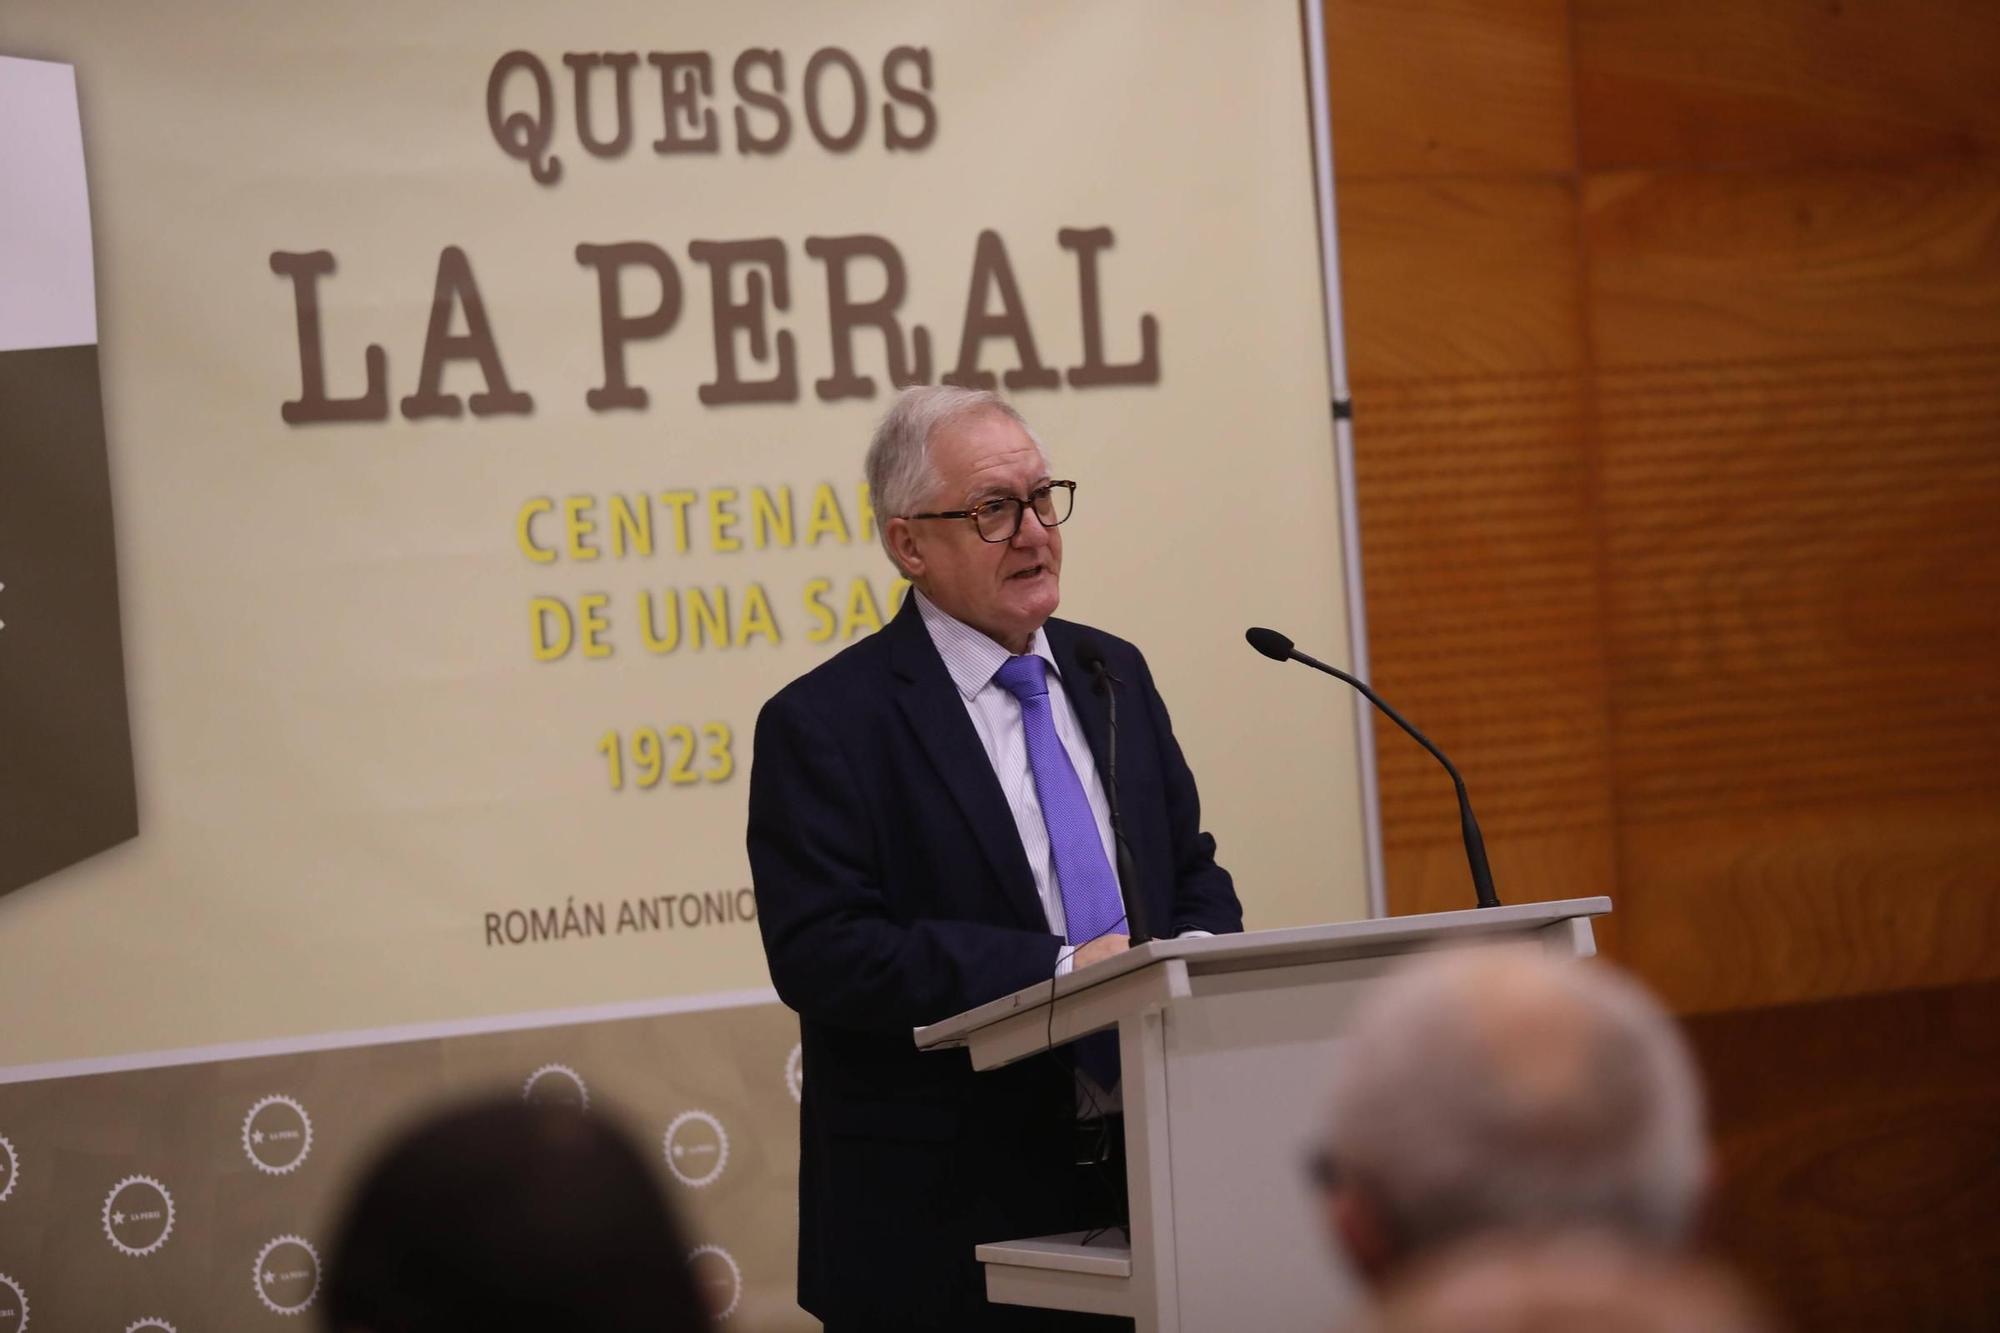 EN IMÁGENES: Así fue la presentación del libro "Quesos La Peral. Centenario de una saga: 1923-2023"